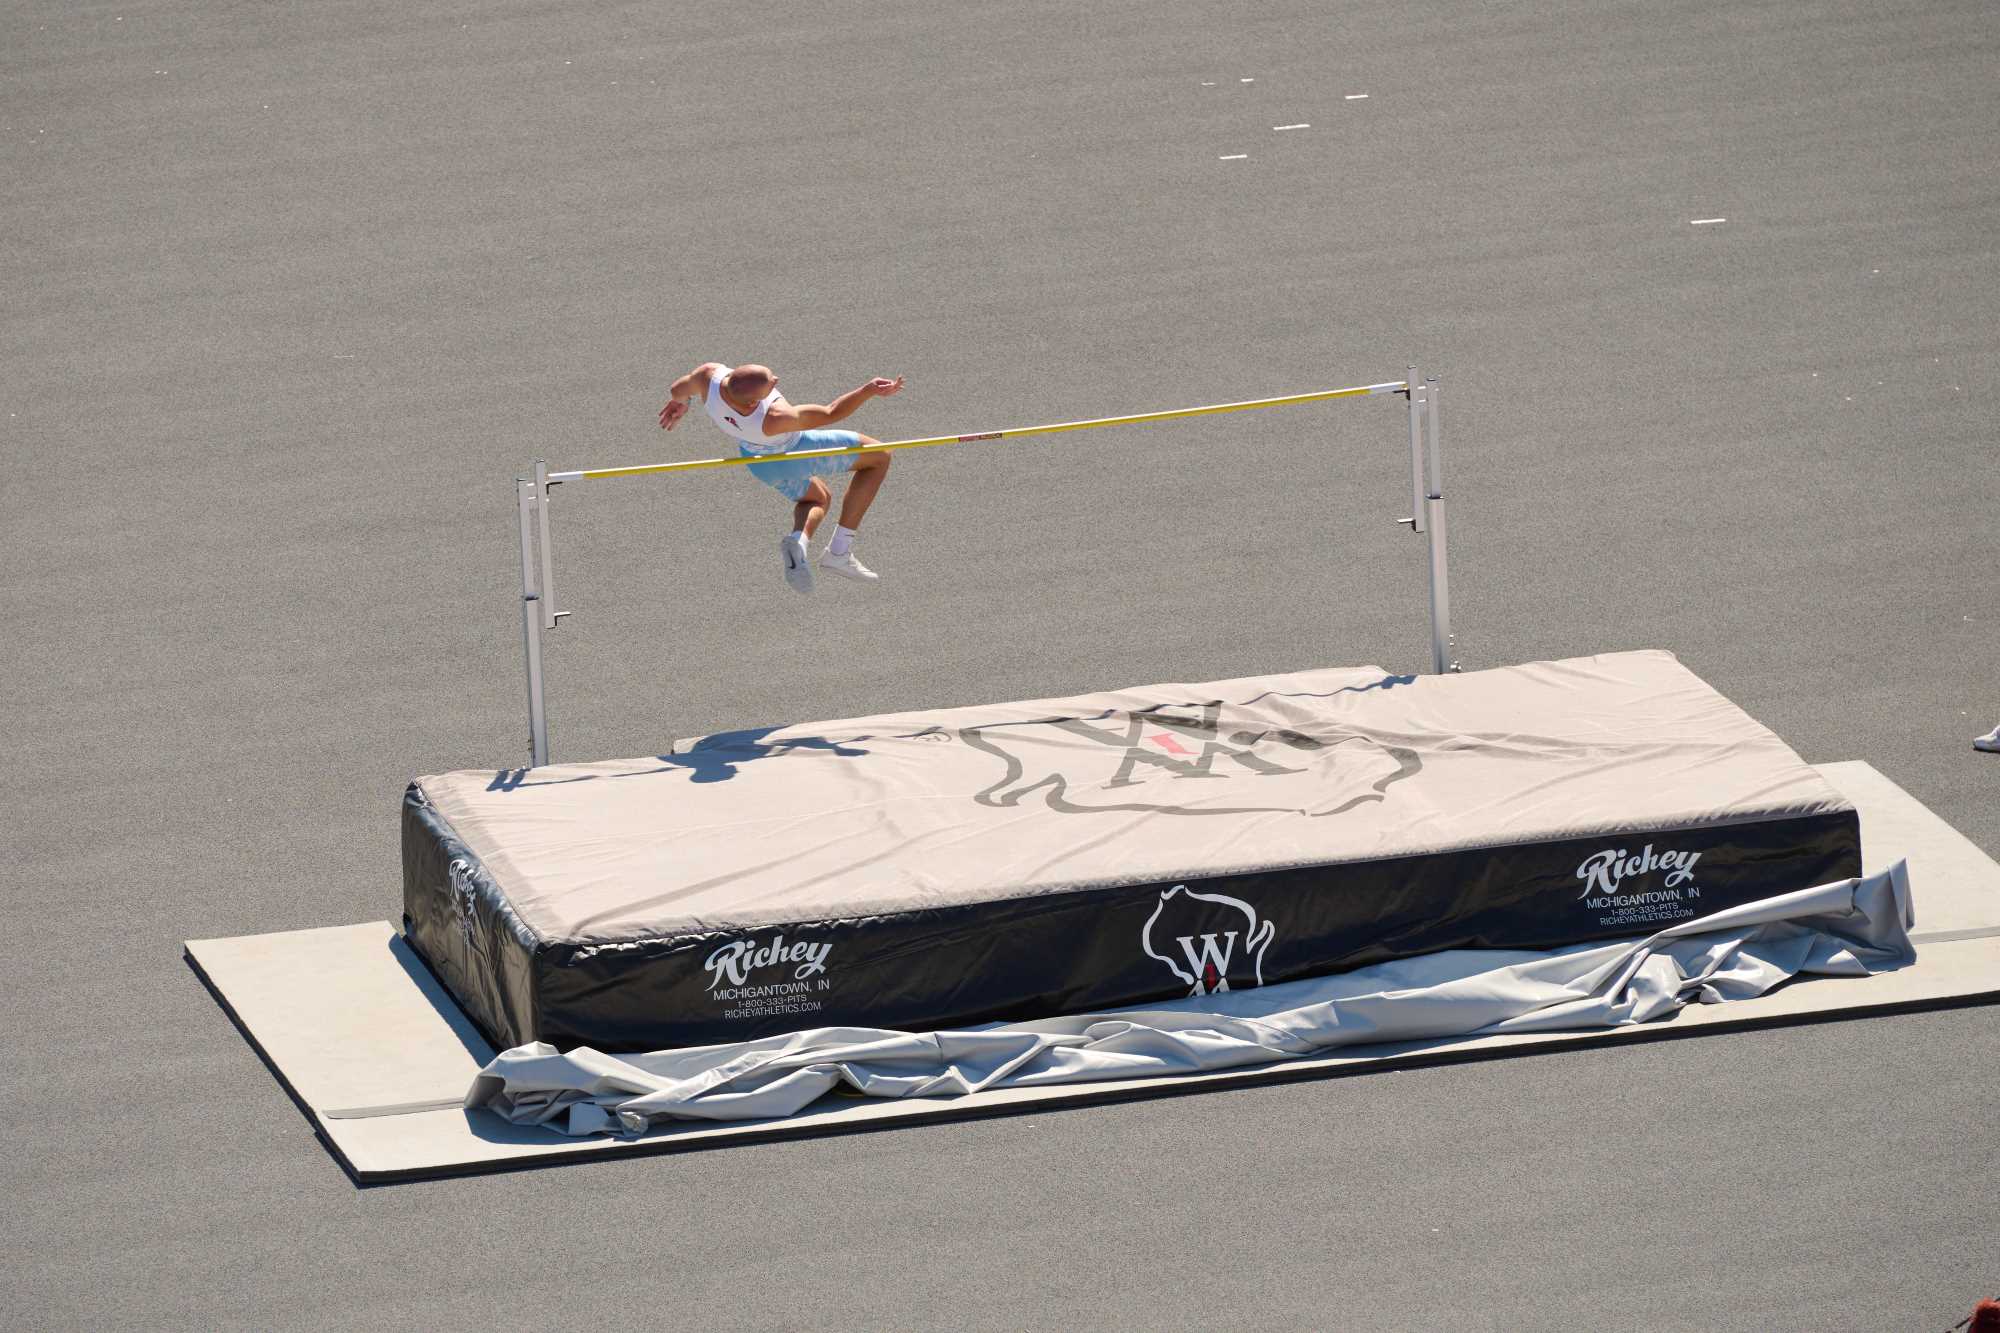 WIAA track: Gymnastics skills translate to pole vault success